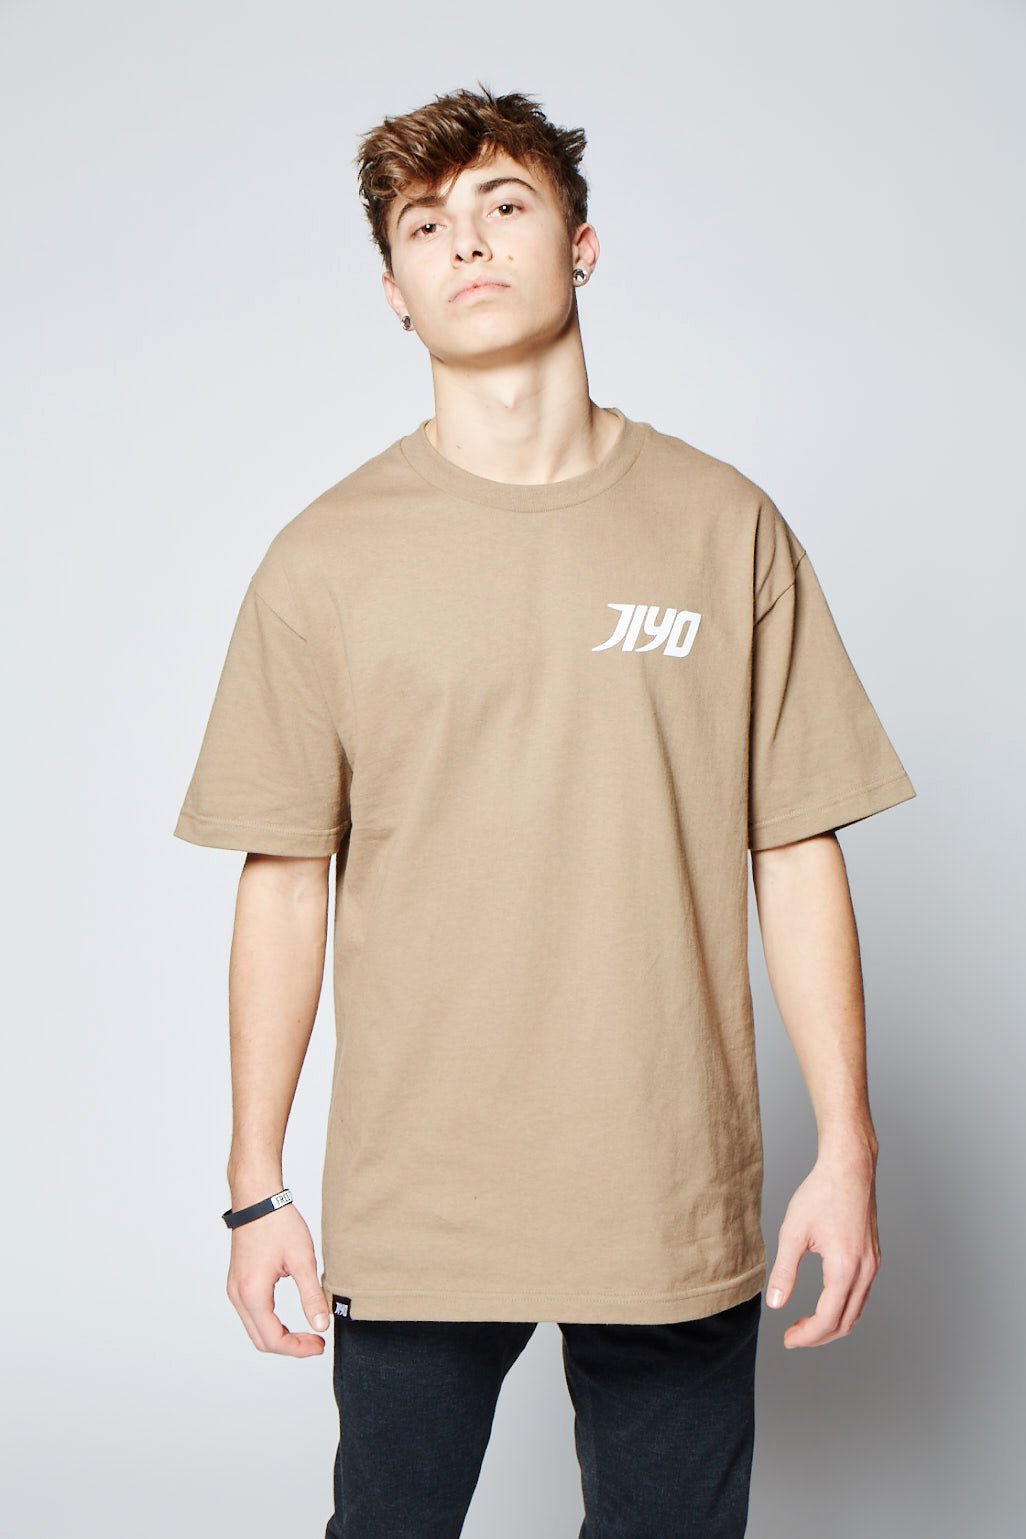 MOZAIC JIYO TEE, SAND - Shirts - JIYO WEAR